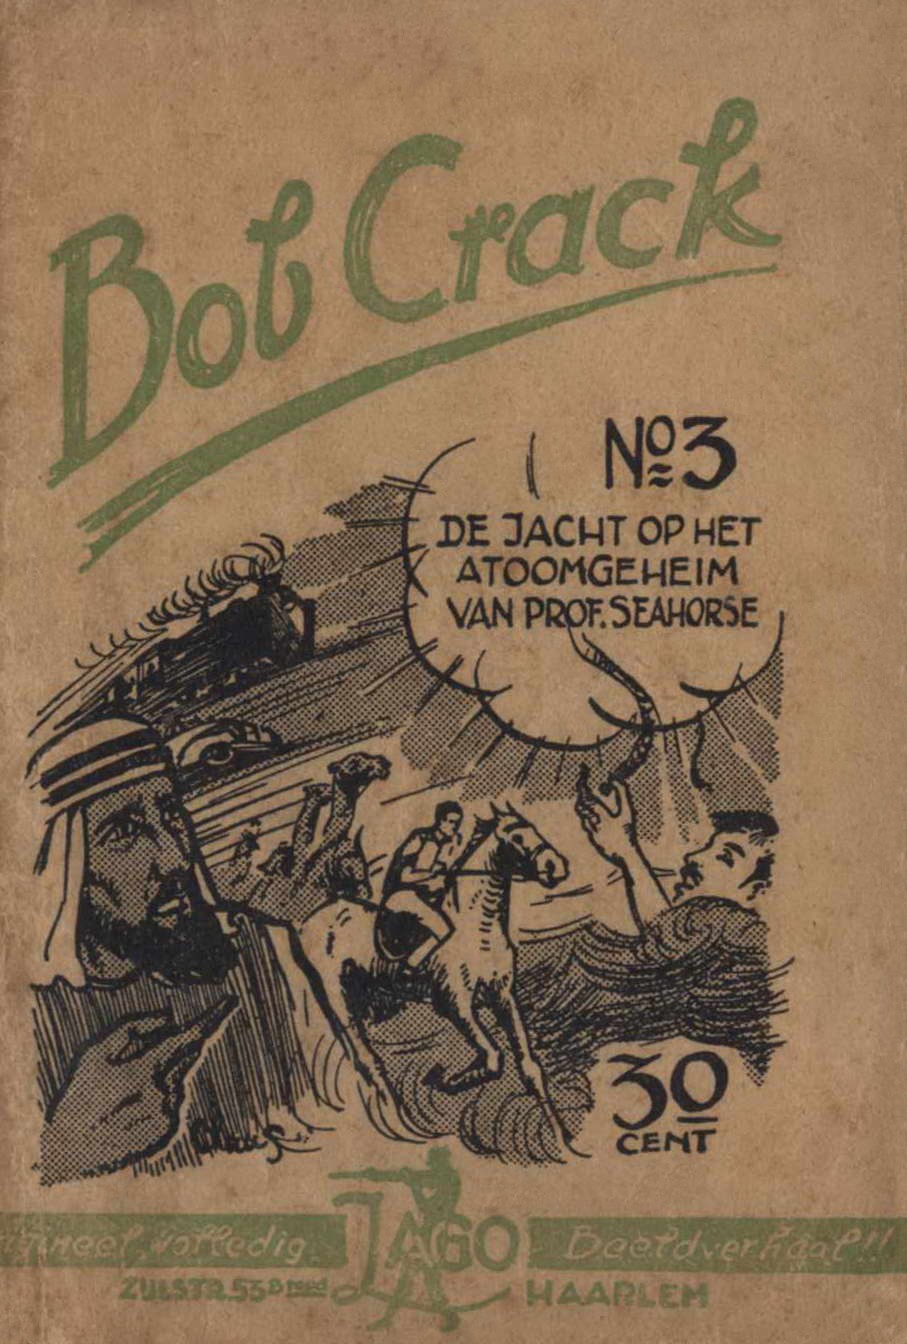 Comic Book Cover For Bob Crack 3 De jacht op het atoomwapen van Prof. Seahorse